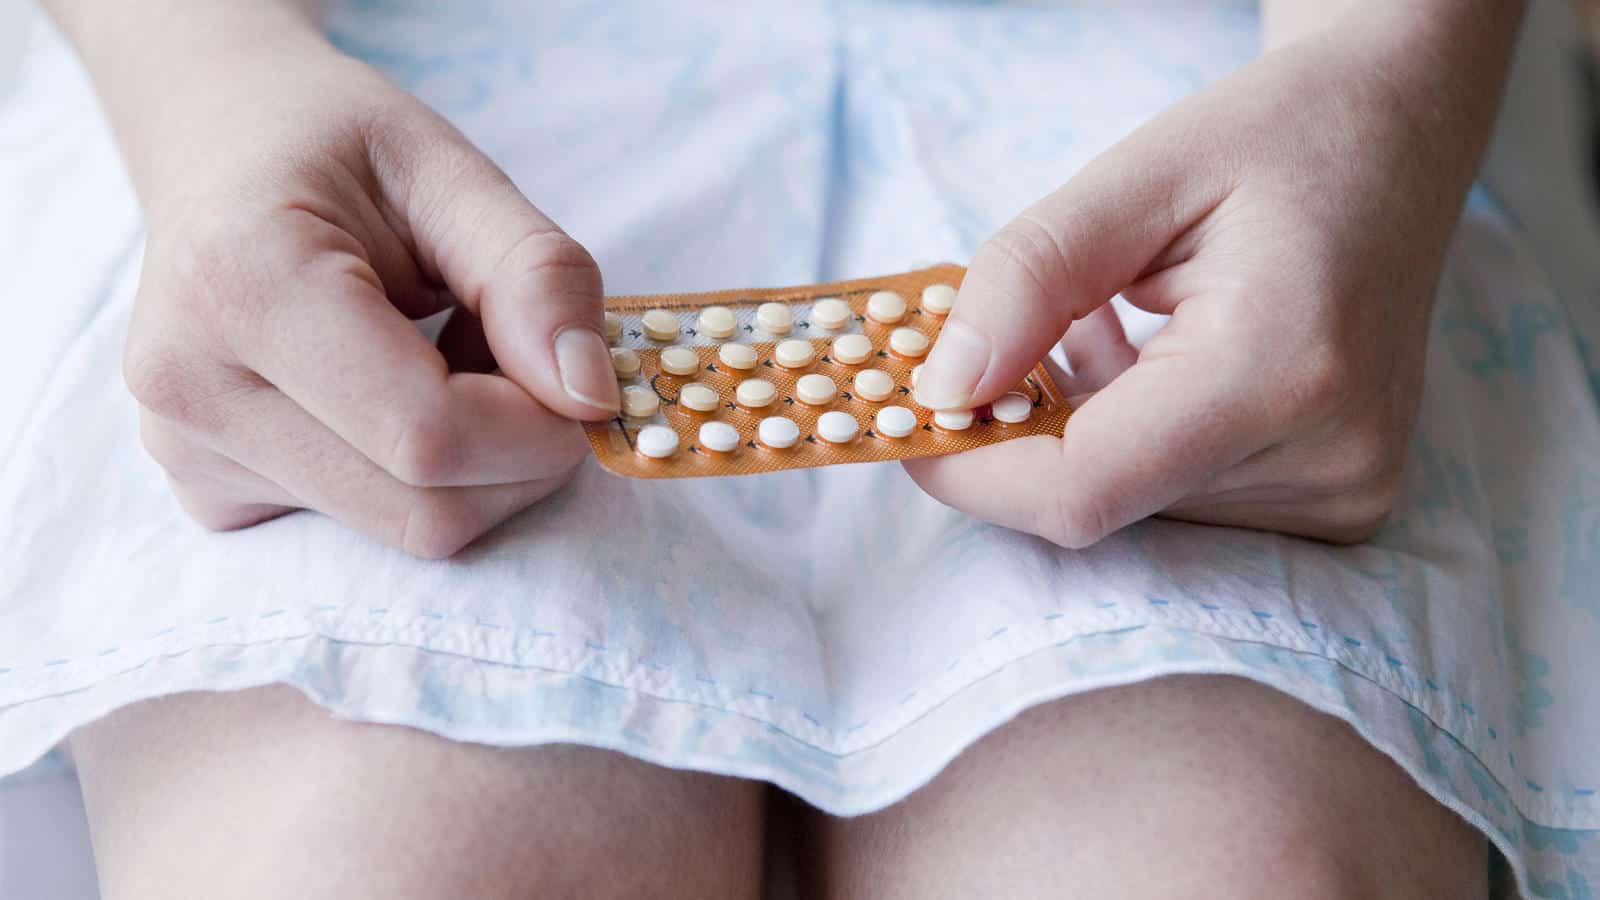 7 lucruri care se pot întâmpla cu corpul tău dacă nu mai iei pilule contraceptive